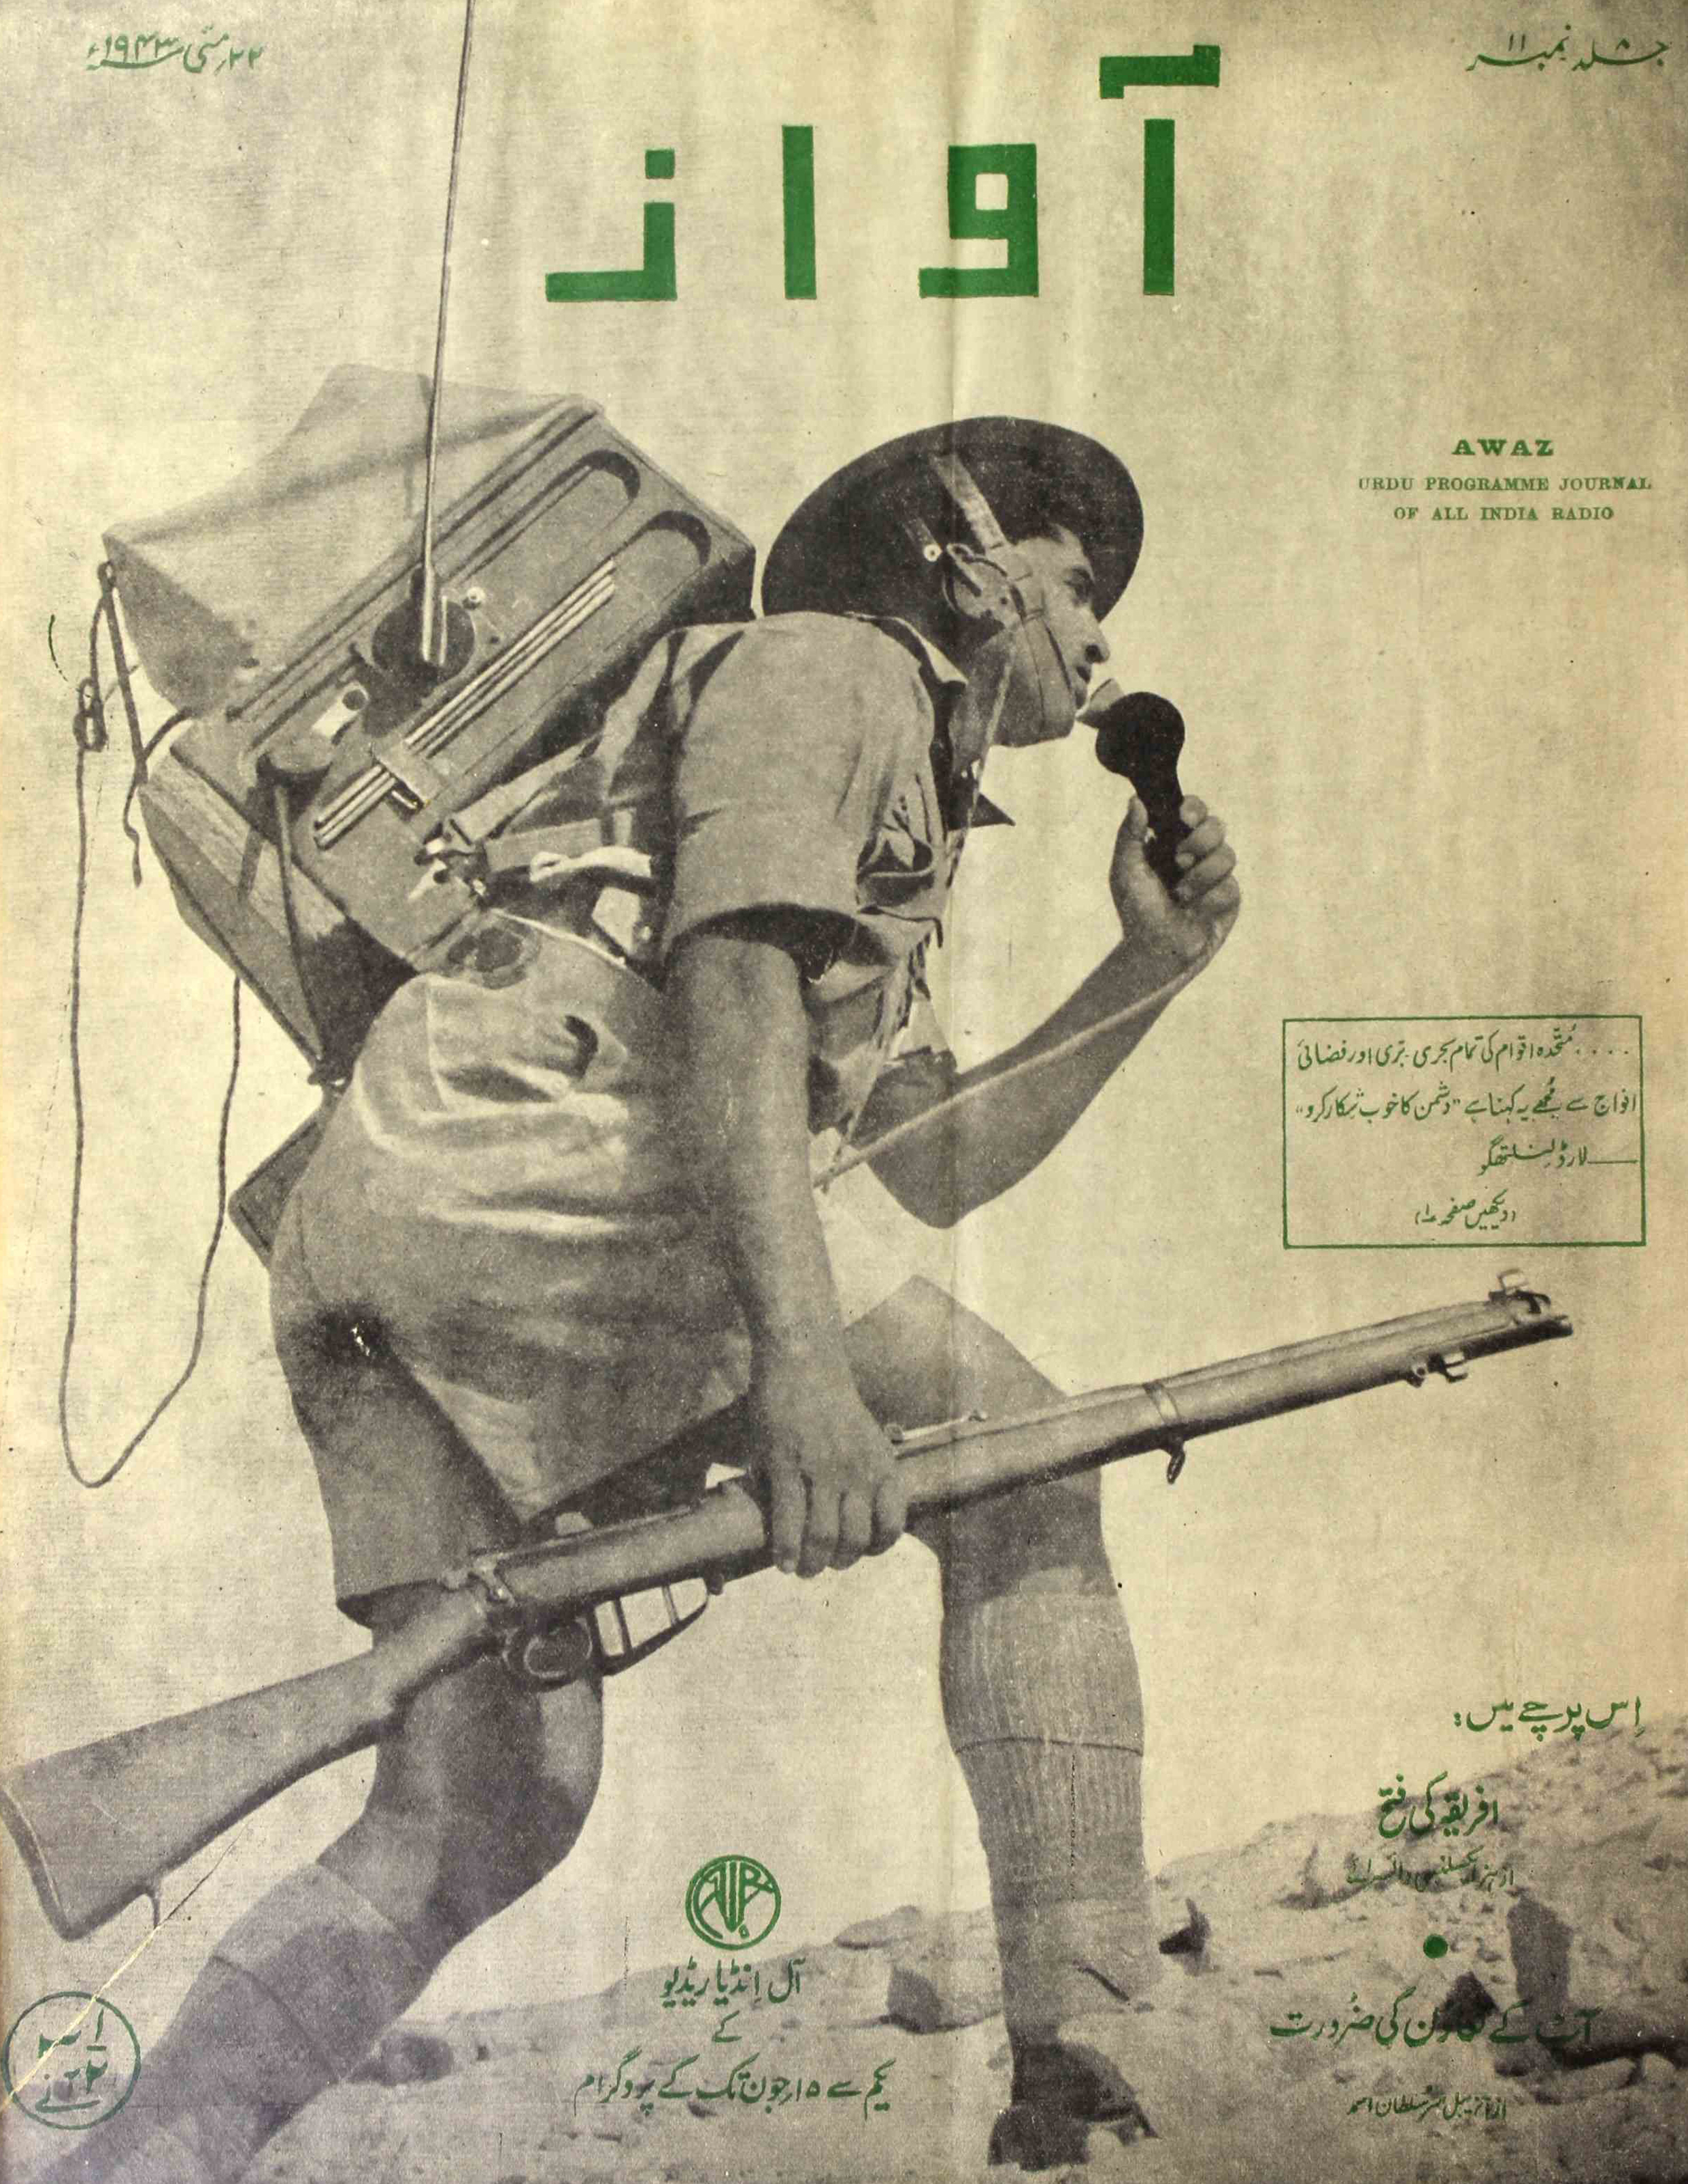 Awaz Jild 8 No 11 May 1943